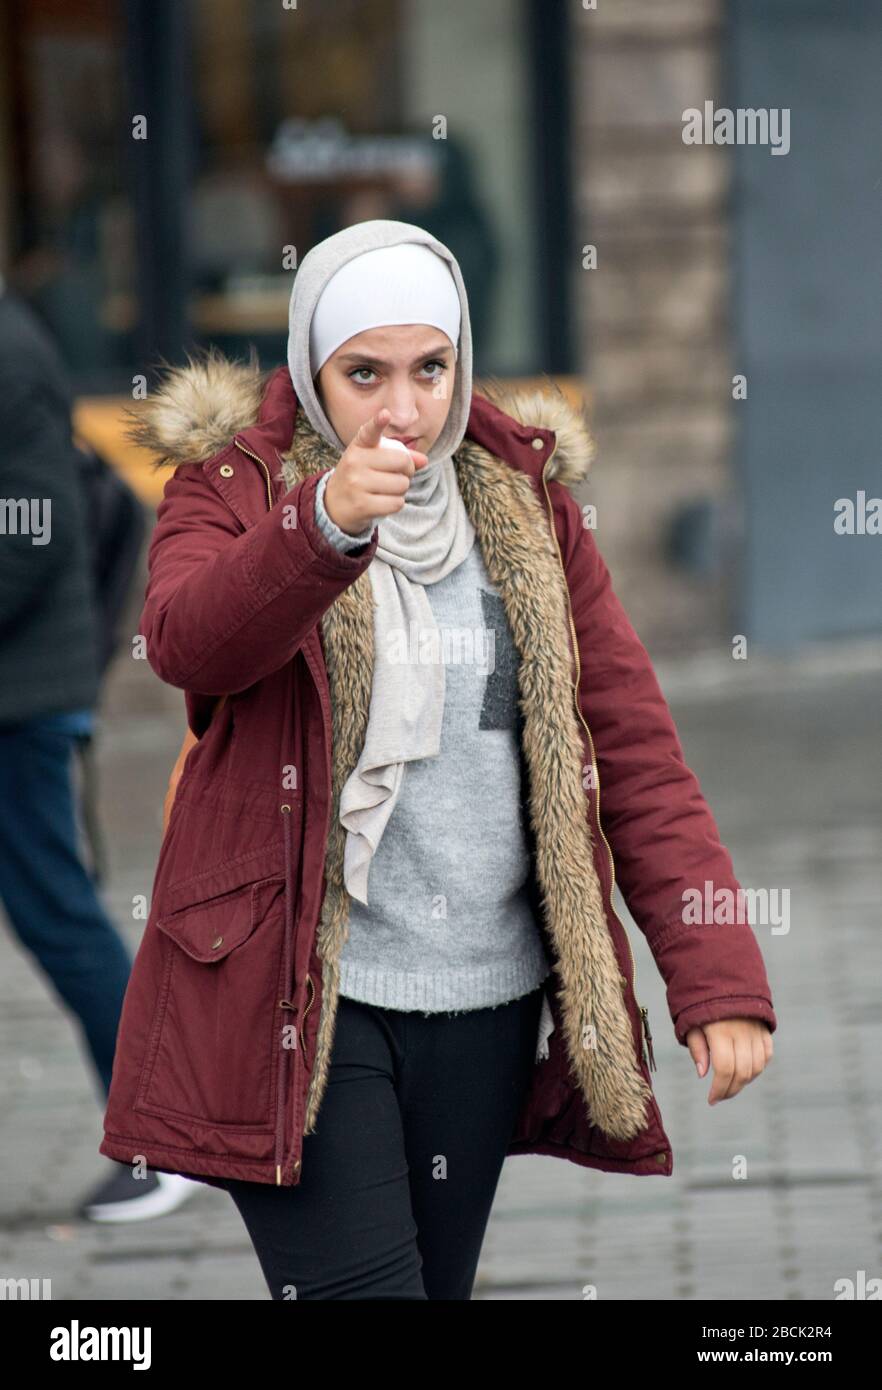 Une fille musulmane portant un pashmina et un manteau d'hiver, pointant avec son doigt. Place Taksim, Istanbul. Turquie Banque D'Images